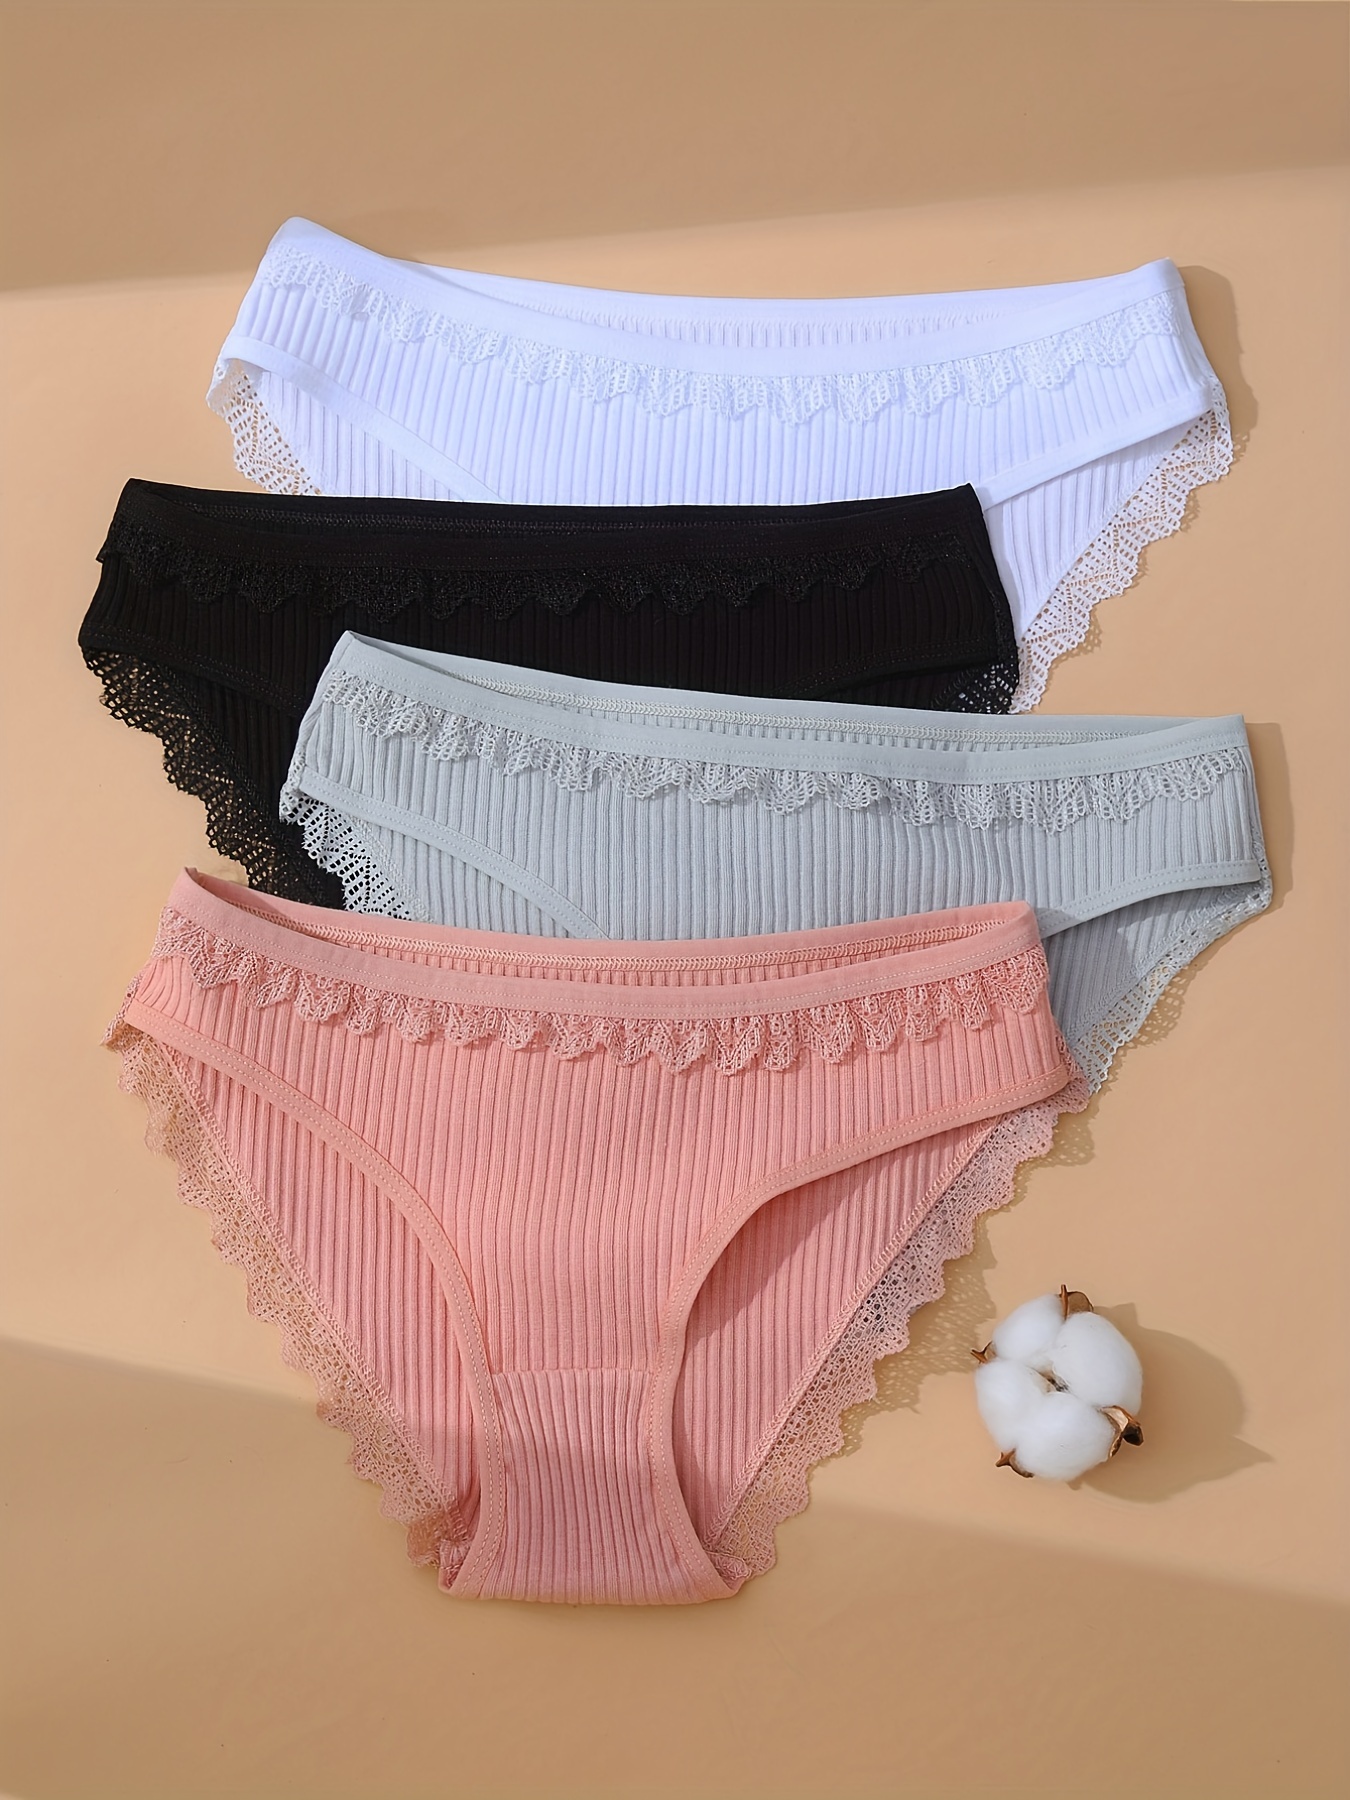 Ladies Seamless Cotton Underpants Cotton Boxer Lace Cotton Briefs